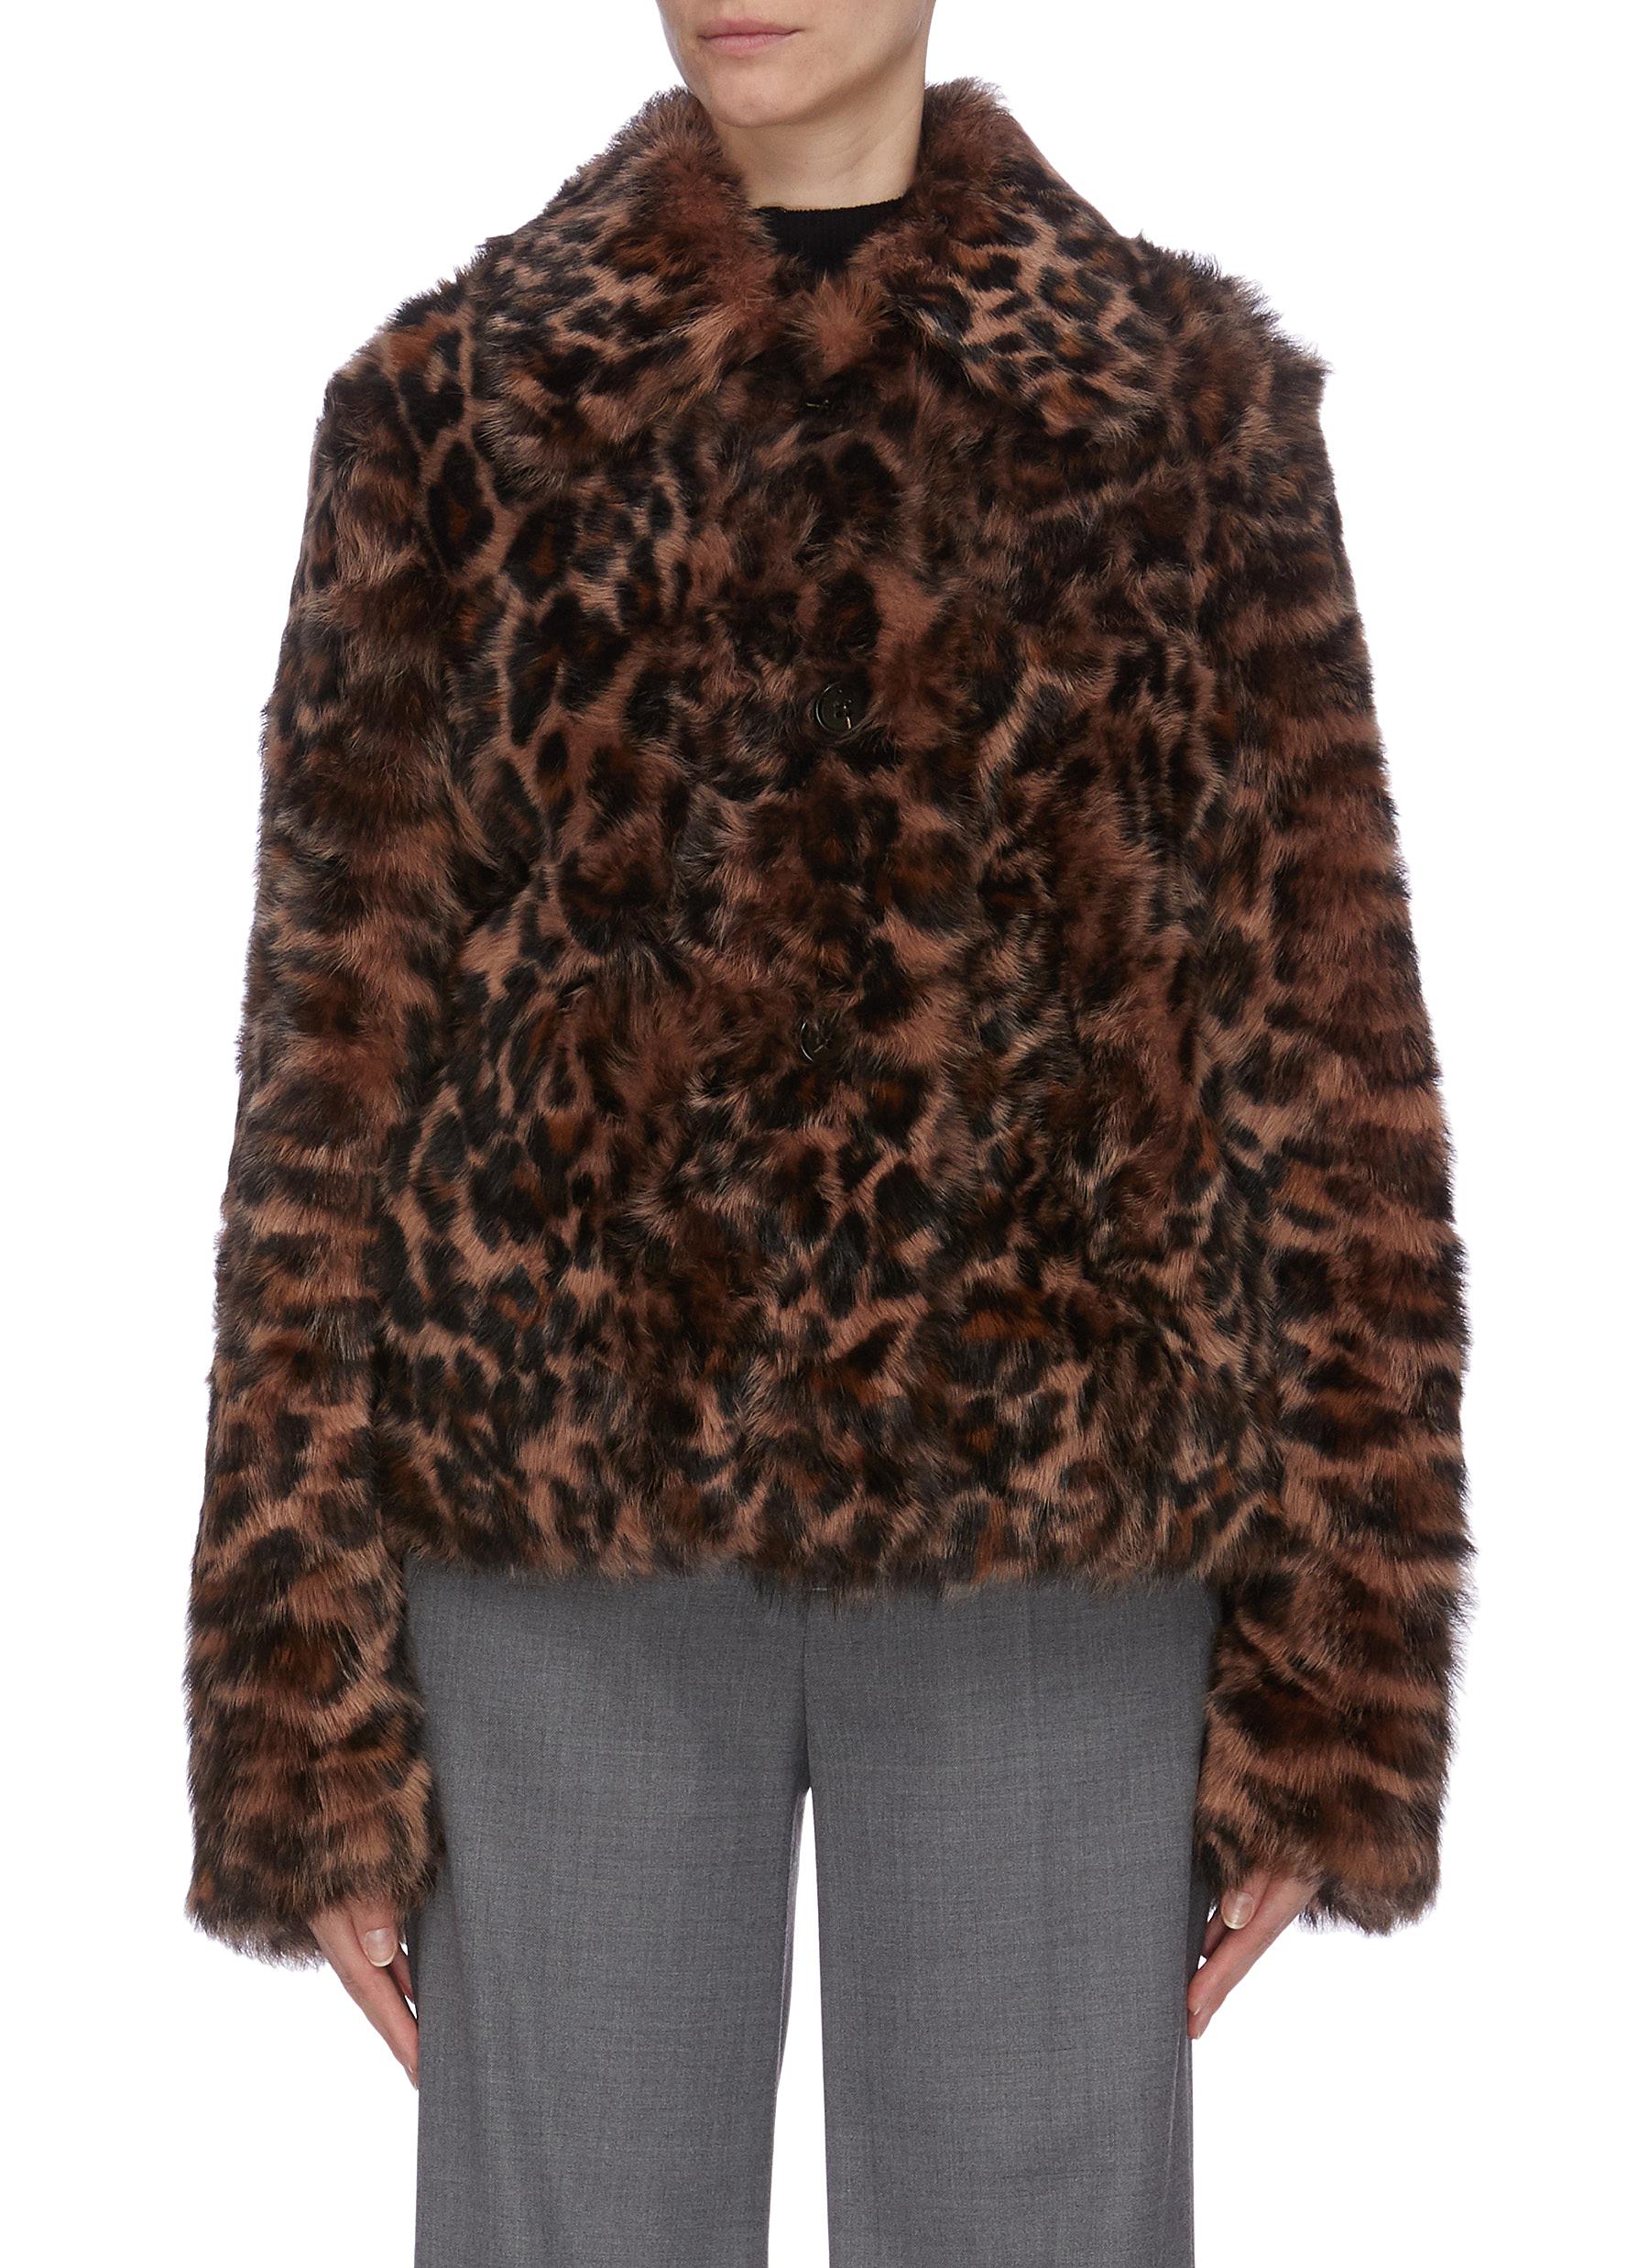 Leopard print lambskin fur jacket by Yves Salomon